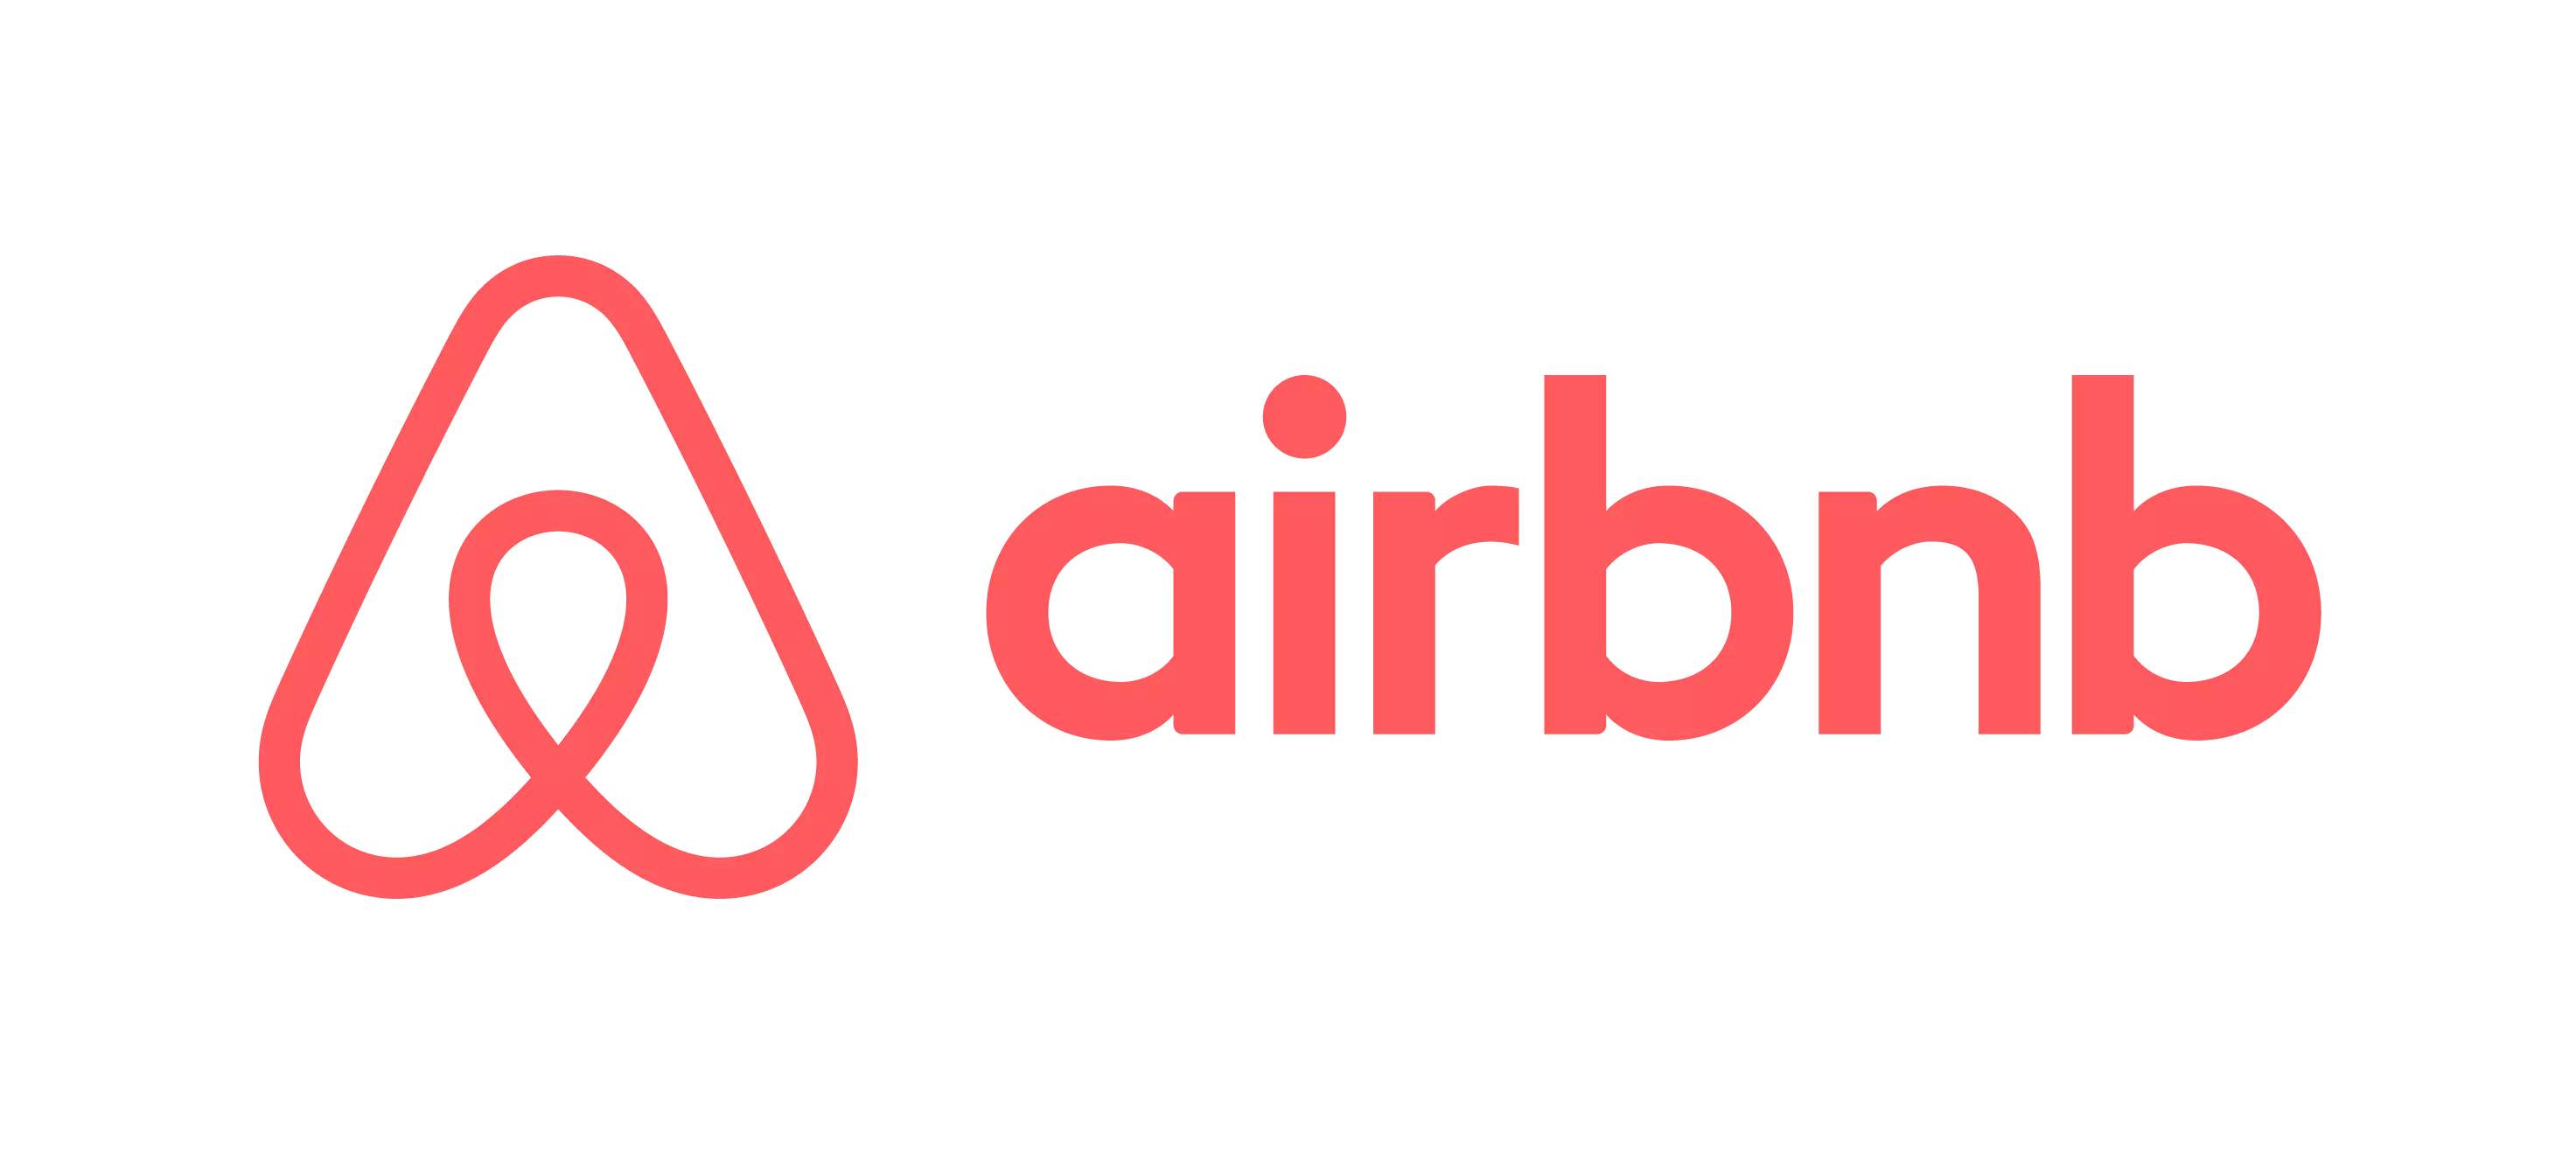 Airbnb称将在纳斯达克上市 但仍未公布具体时间表